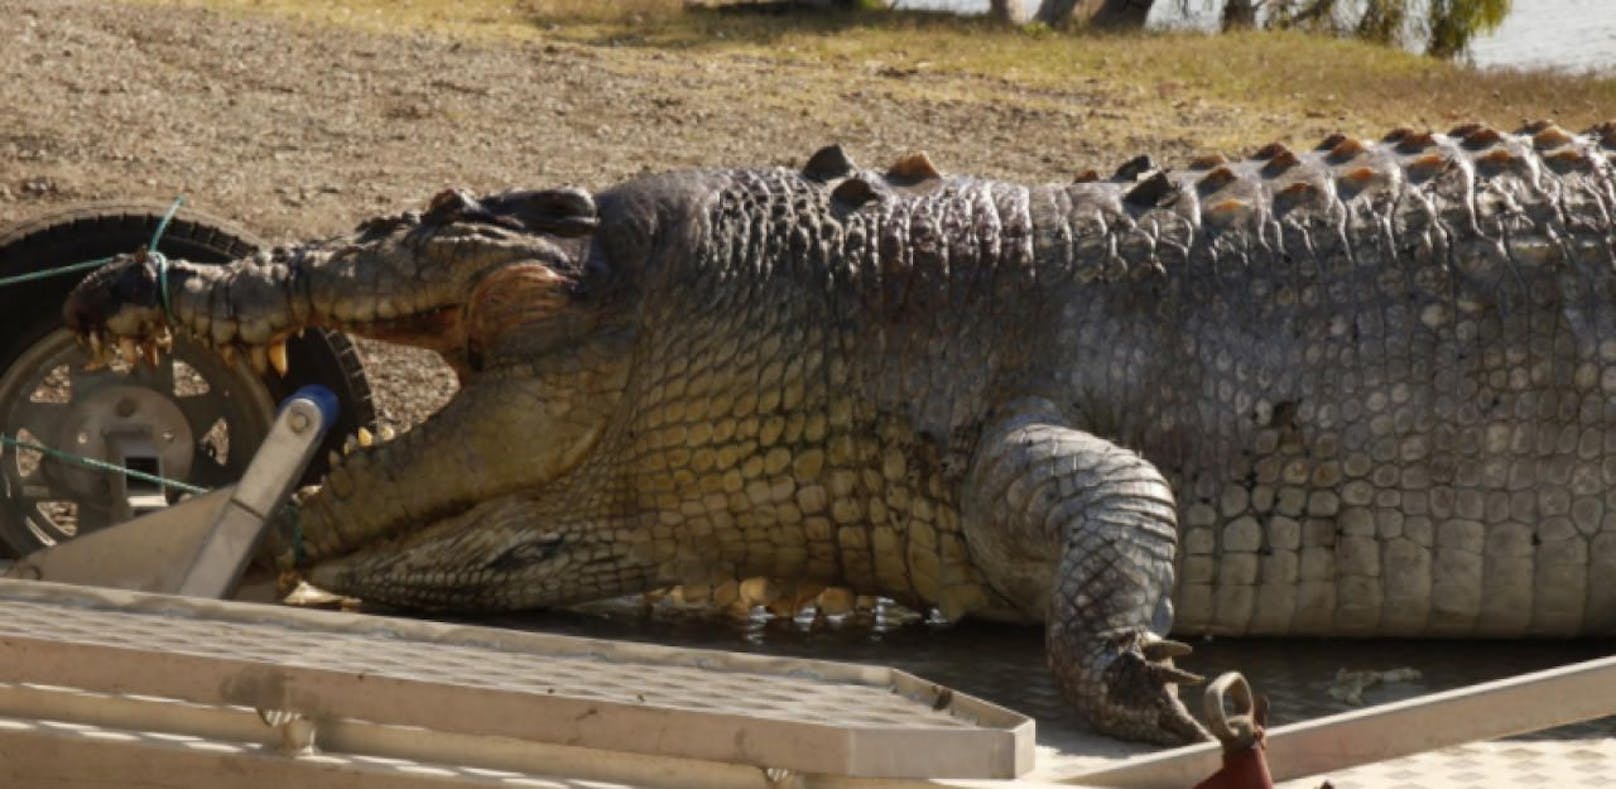 Nach Flut laufen in Rio Krokodile frei herum